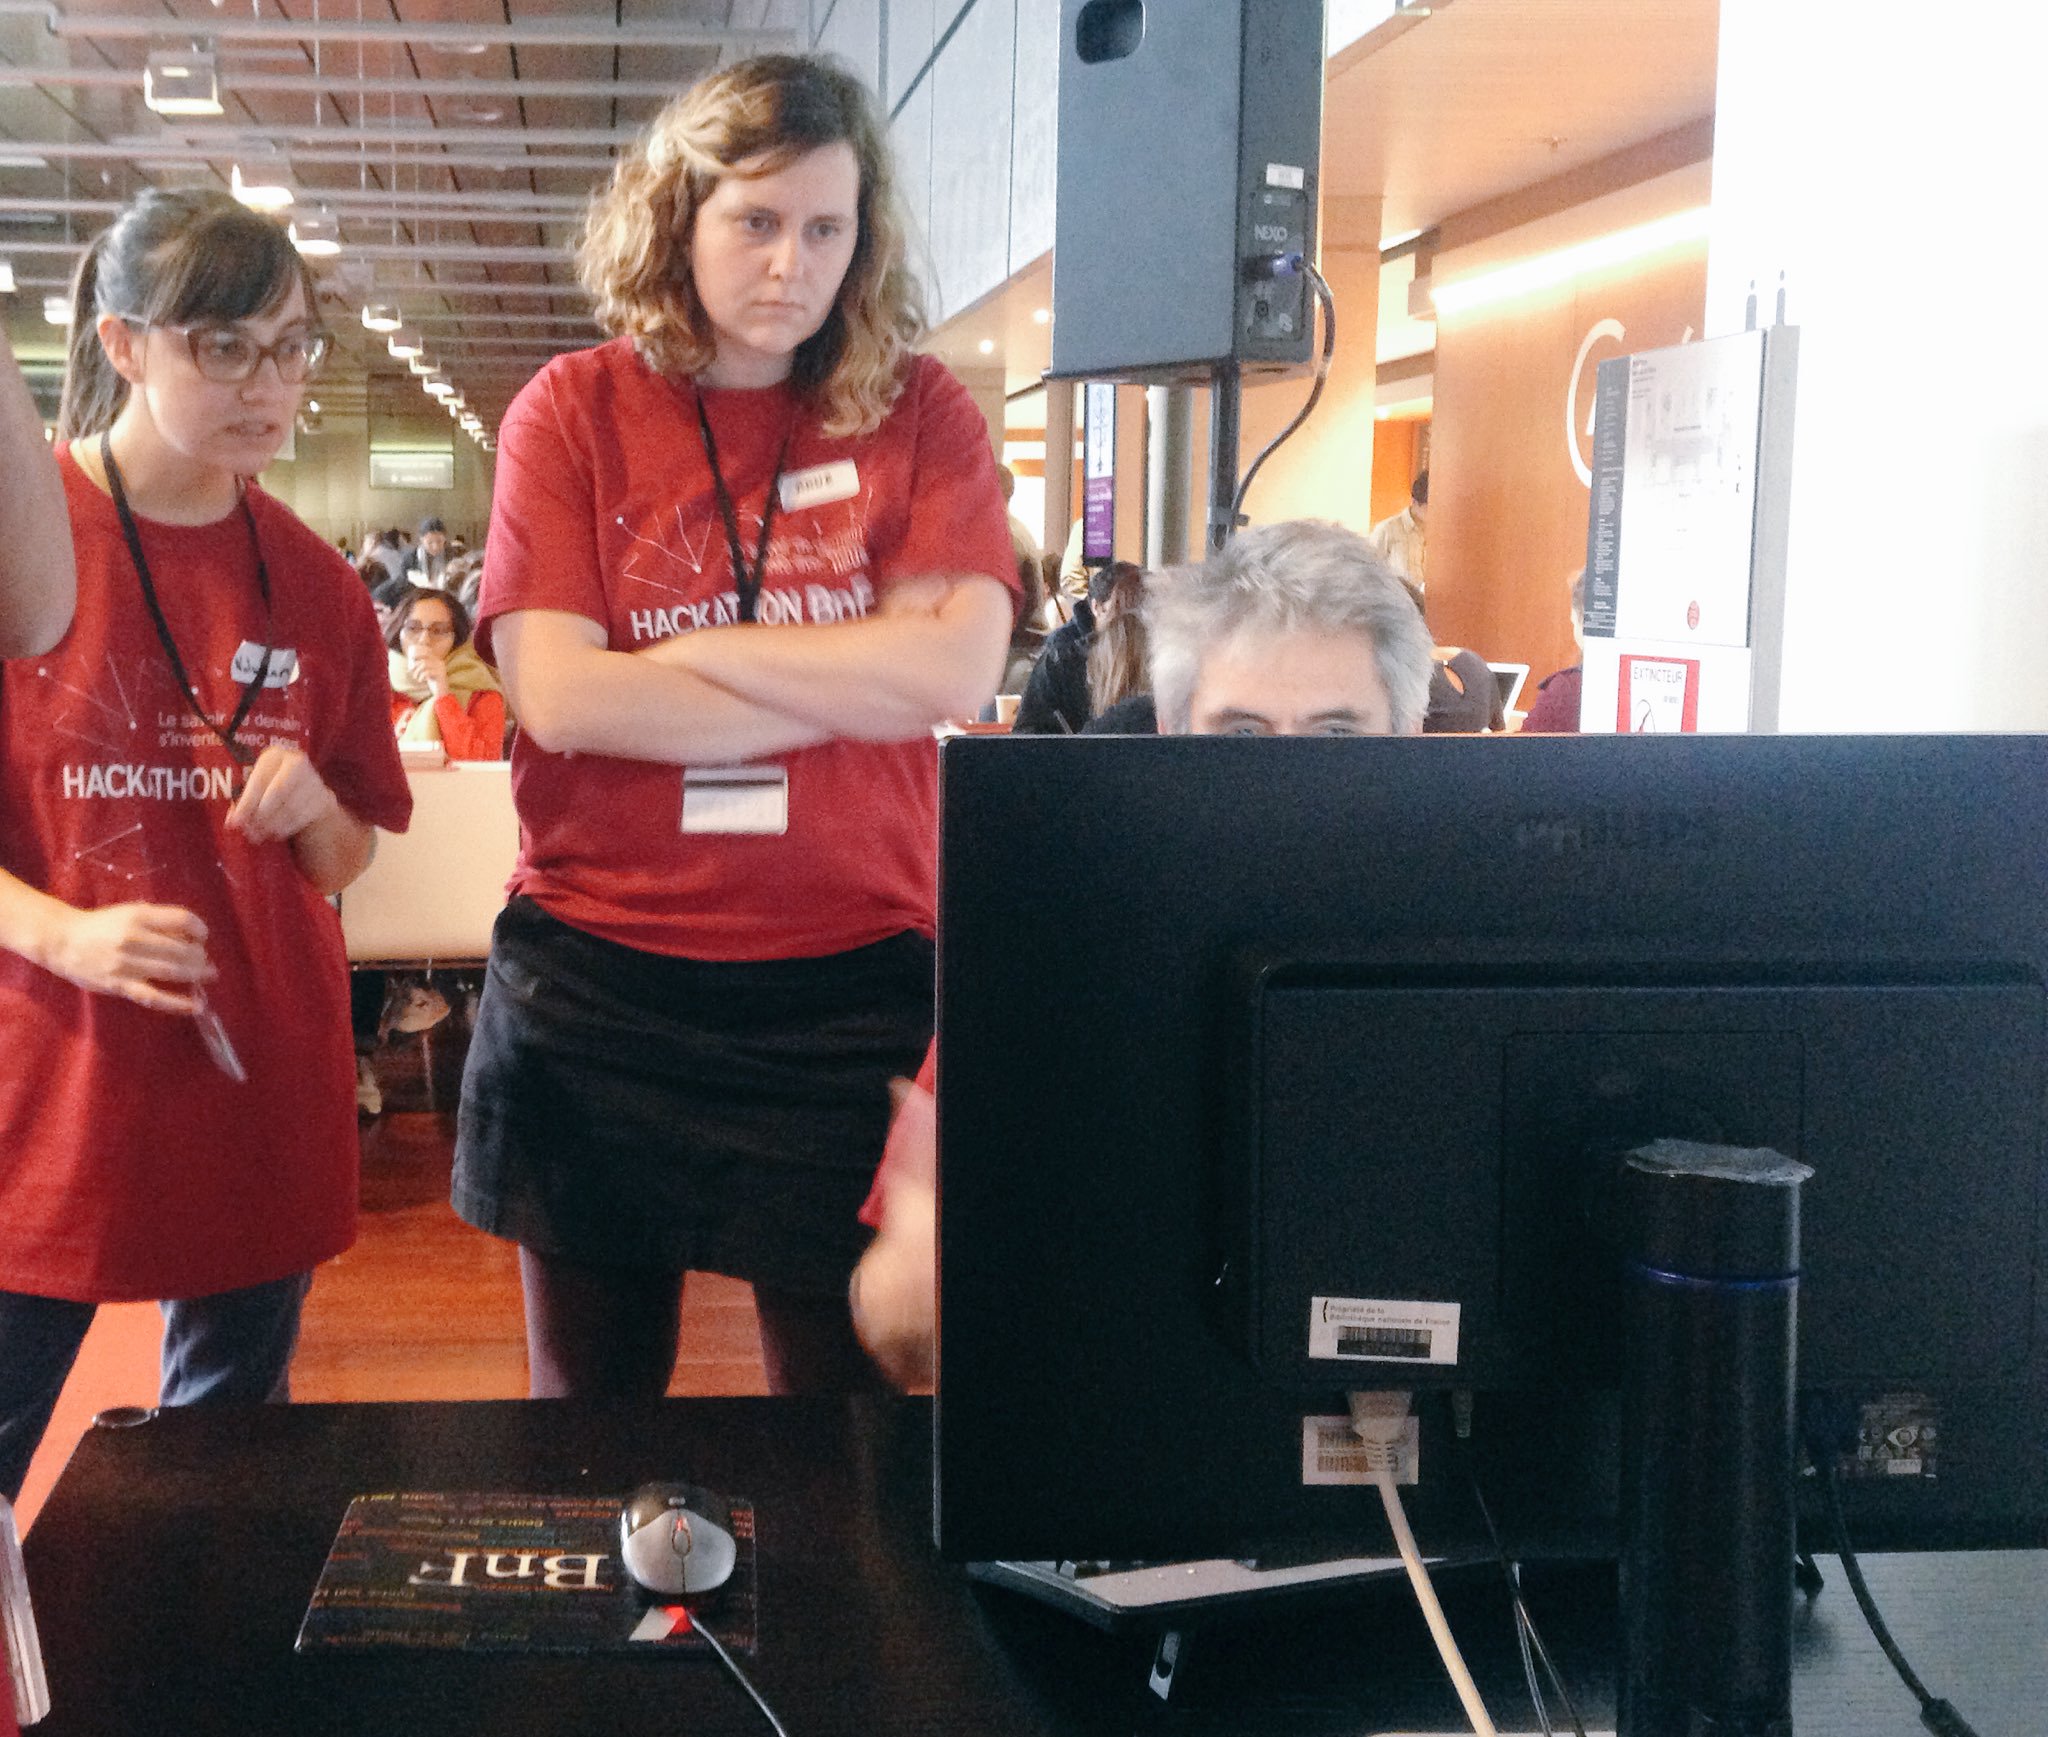 Heureusement que les experts de la @laBnF sont là pour nous aider ! 
#hackathonBnF https://t.co/LrE9n8AAAa